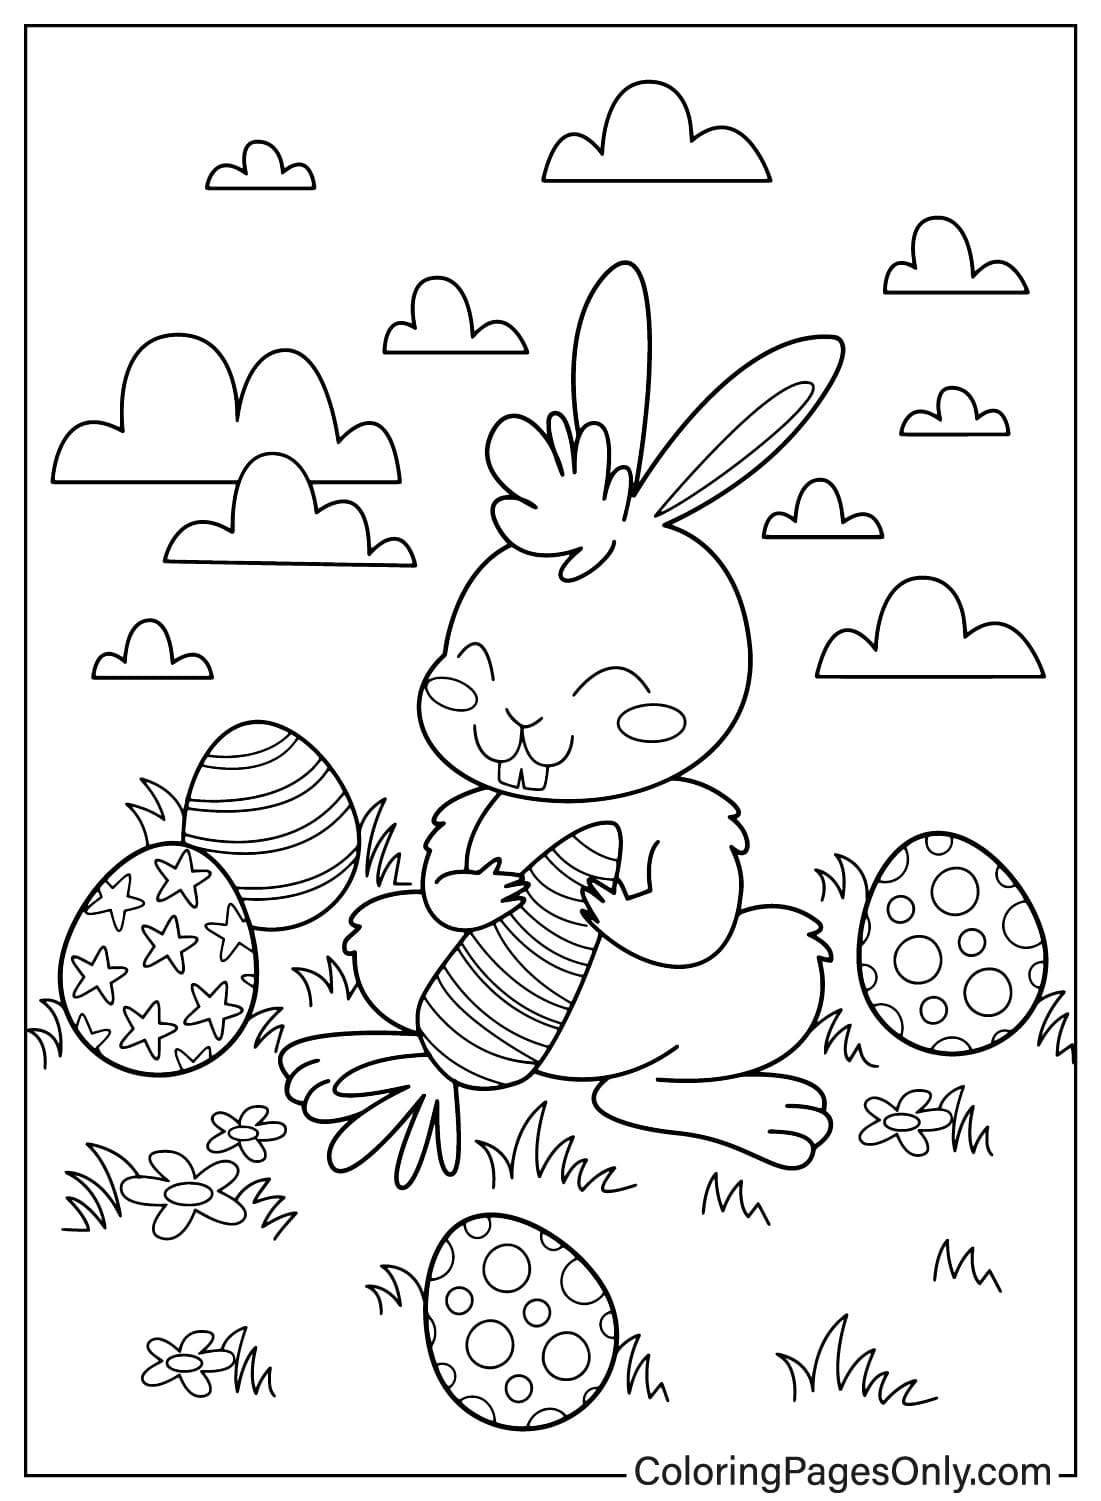 Página para colorear del conejito de Pascua JPG del conejito de Pascua